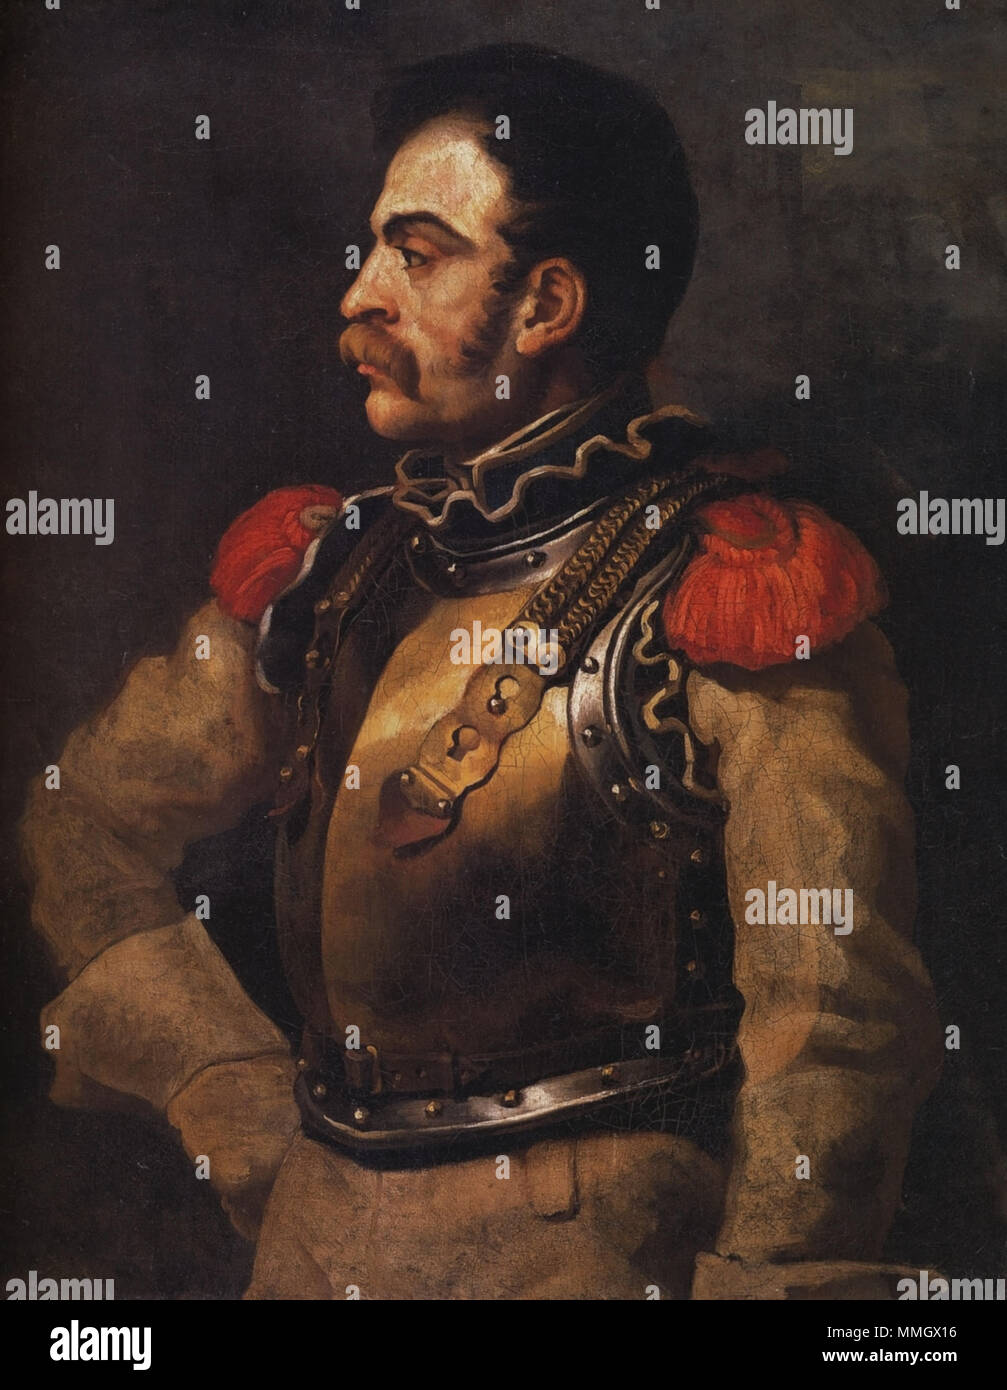 Géricault - Portrait de carabinier - Louvre Stock Photo